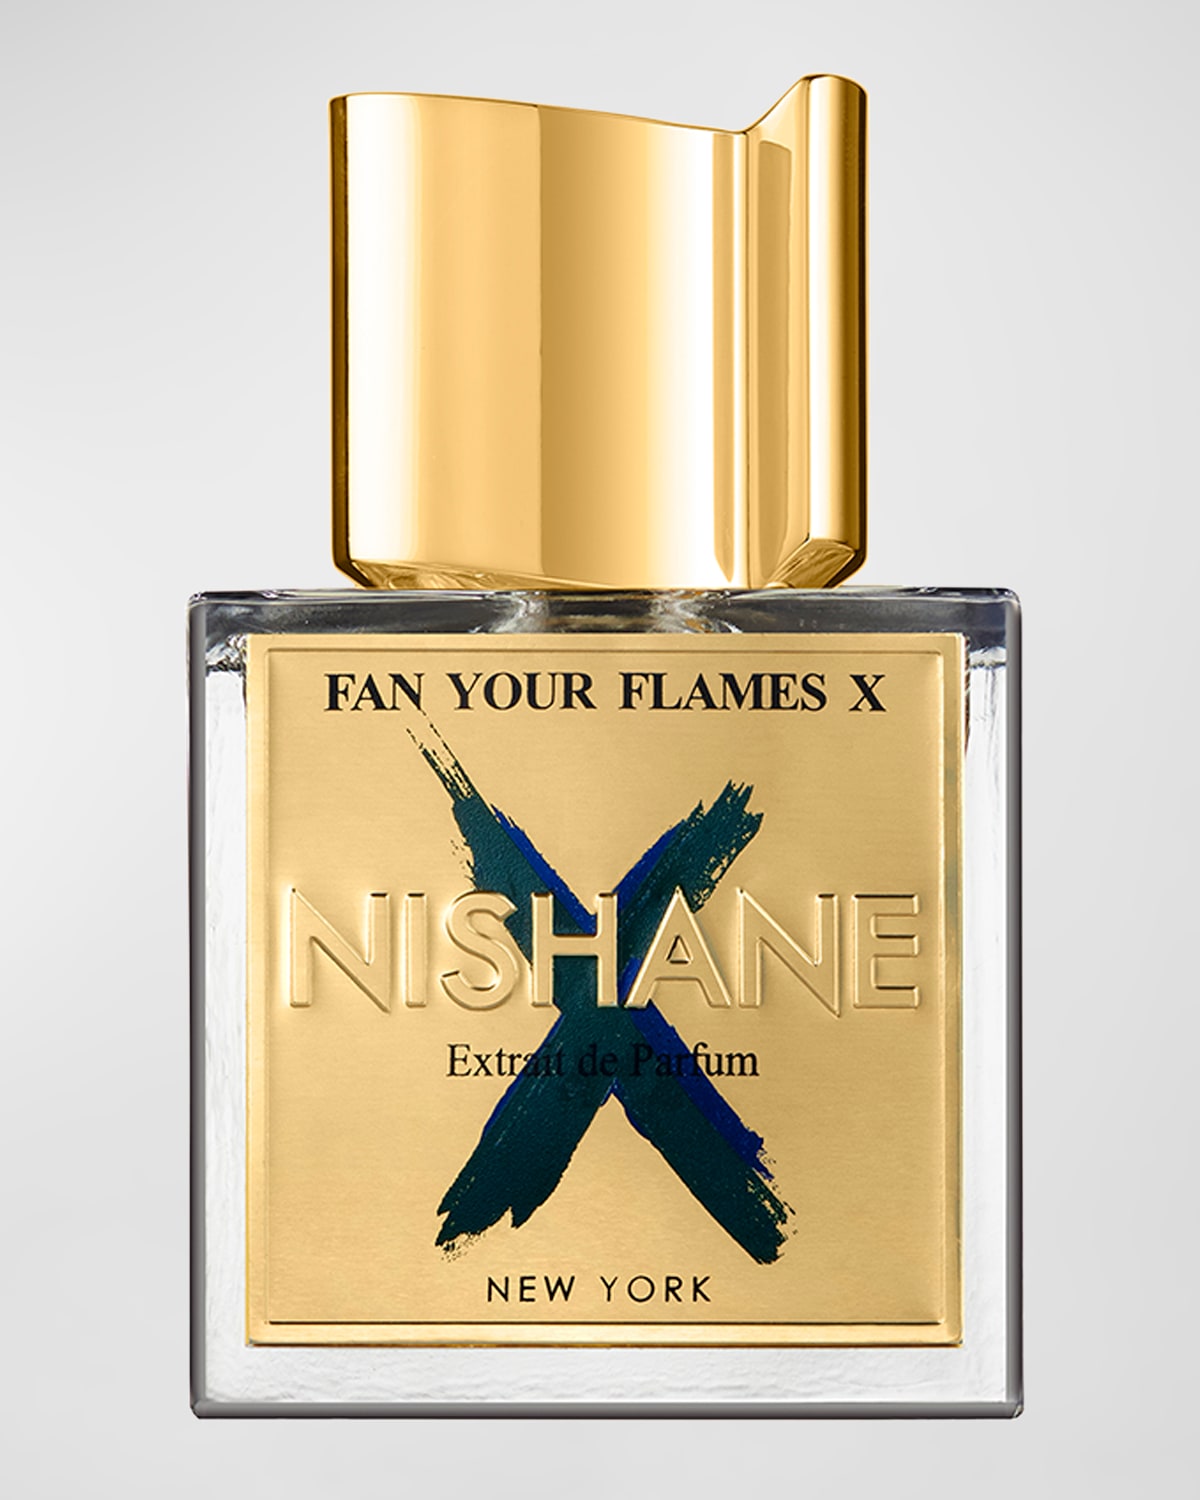 Fan Your Flames X Extrait de Parfum, 1.7 oz.